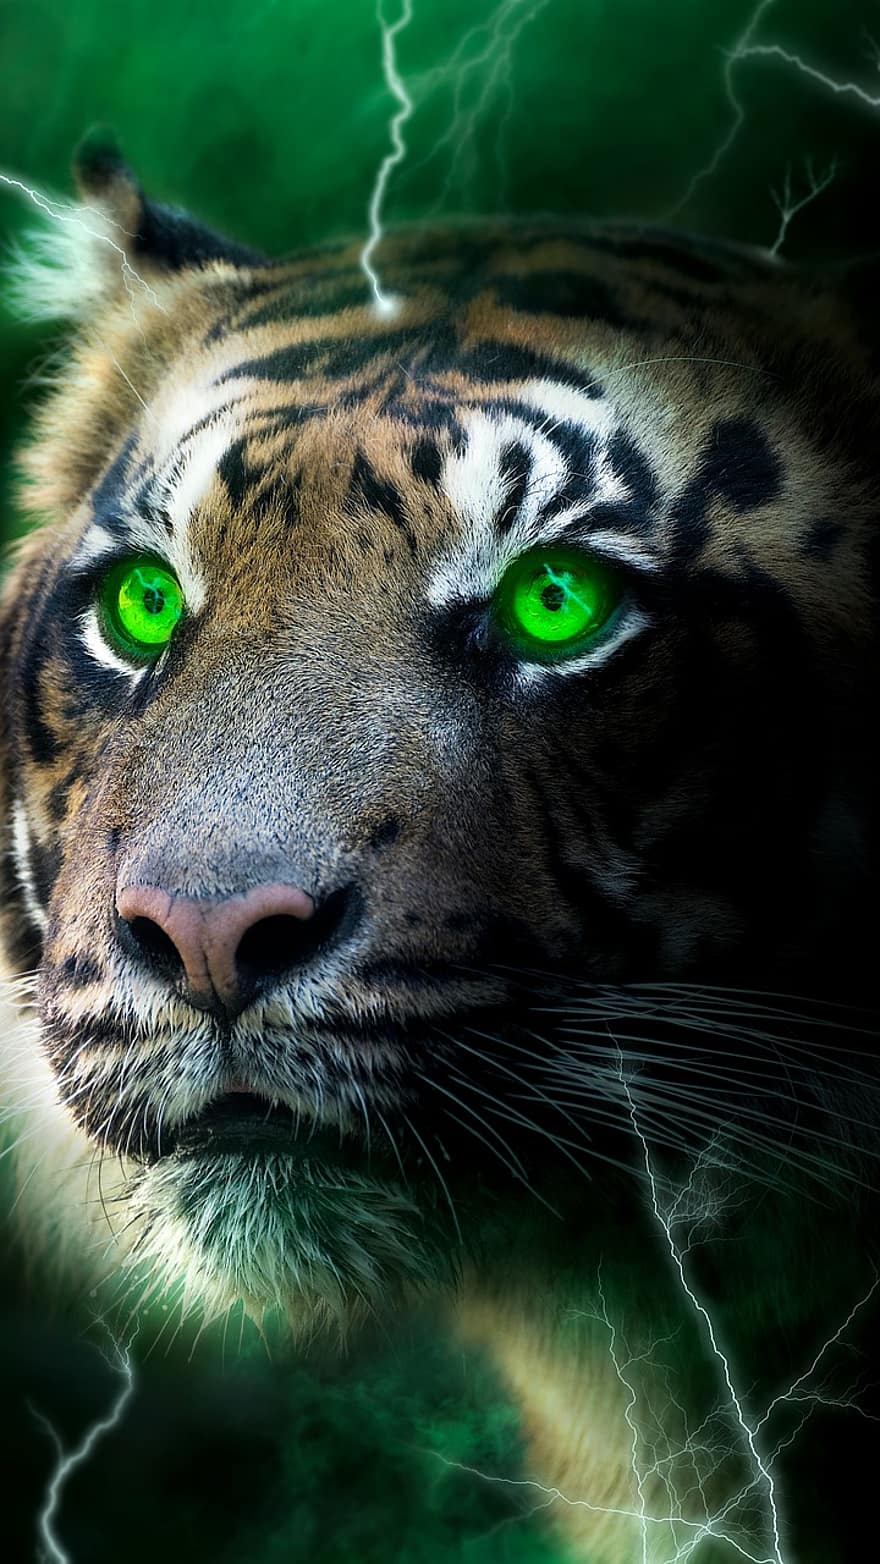 tigre, relâmpago, Sombrio, brilho, verde, névoa, papel de parede, felino, animais em estado selvagem, cabeça de animal, gato não domesticado